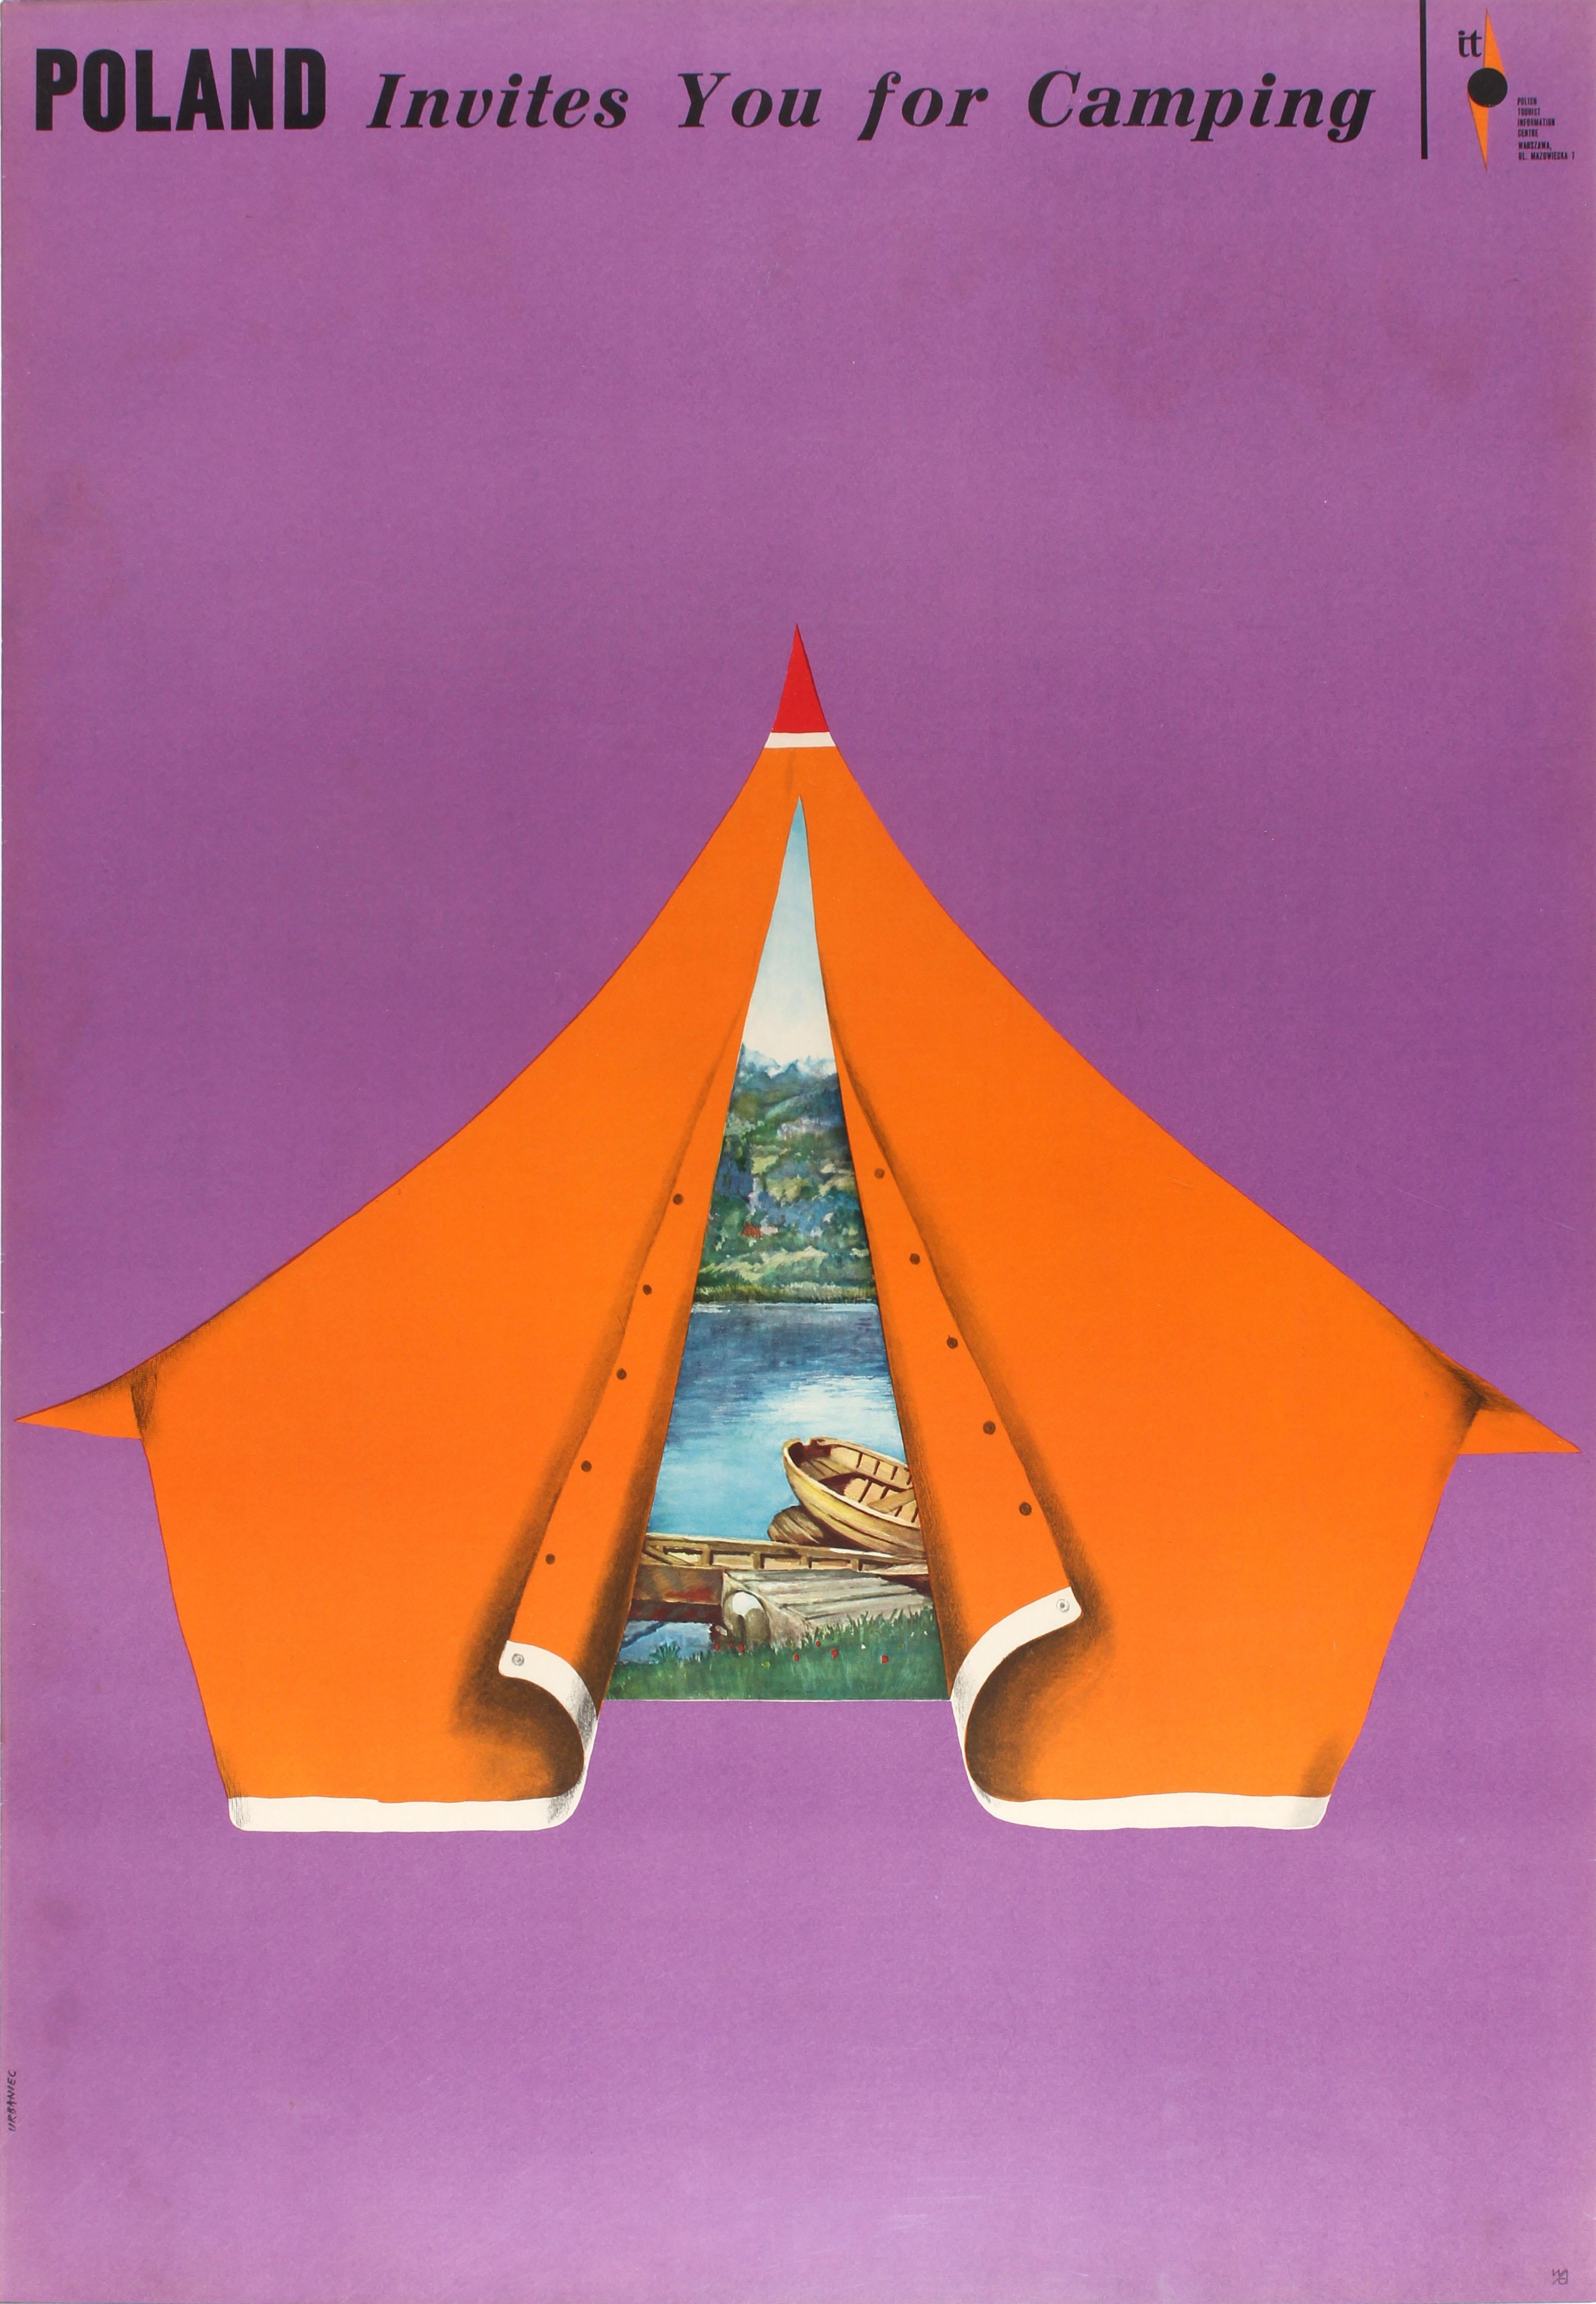 Affiche de voyage vintage originale - Poland Invites You for Camping - présentant un superbe dessin du célèbre artiste polonais Maciej Urbaniec (1925-2004) montrant une vue panoramique à travers l'ouverture d'une tente orange de bateaux en bois sur